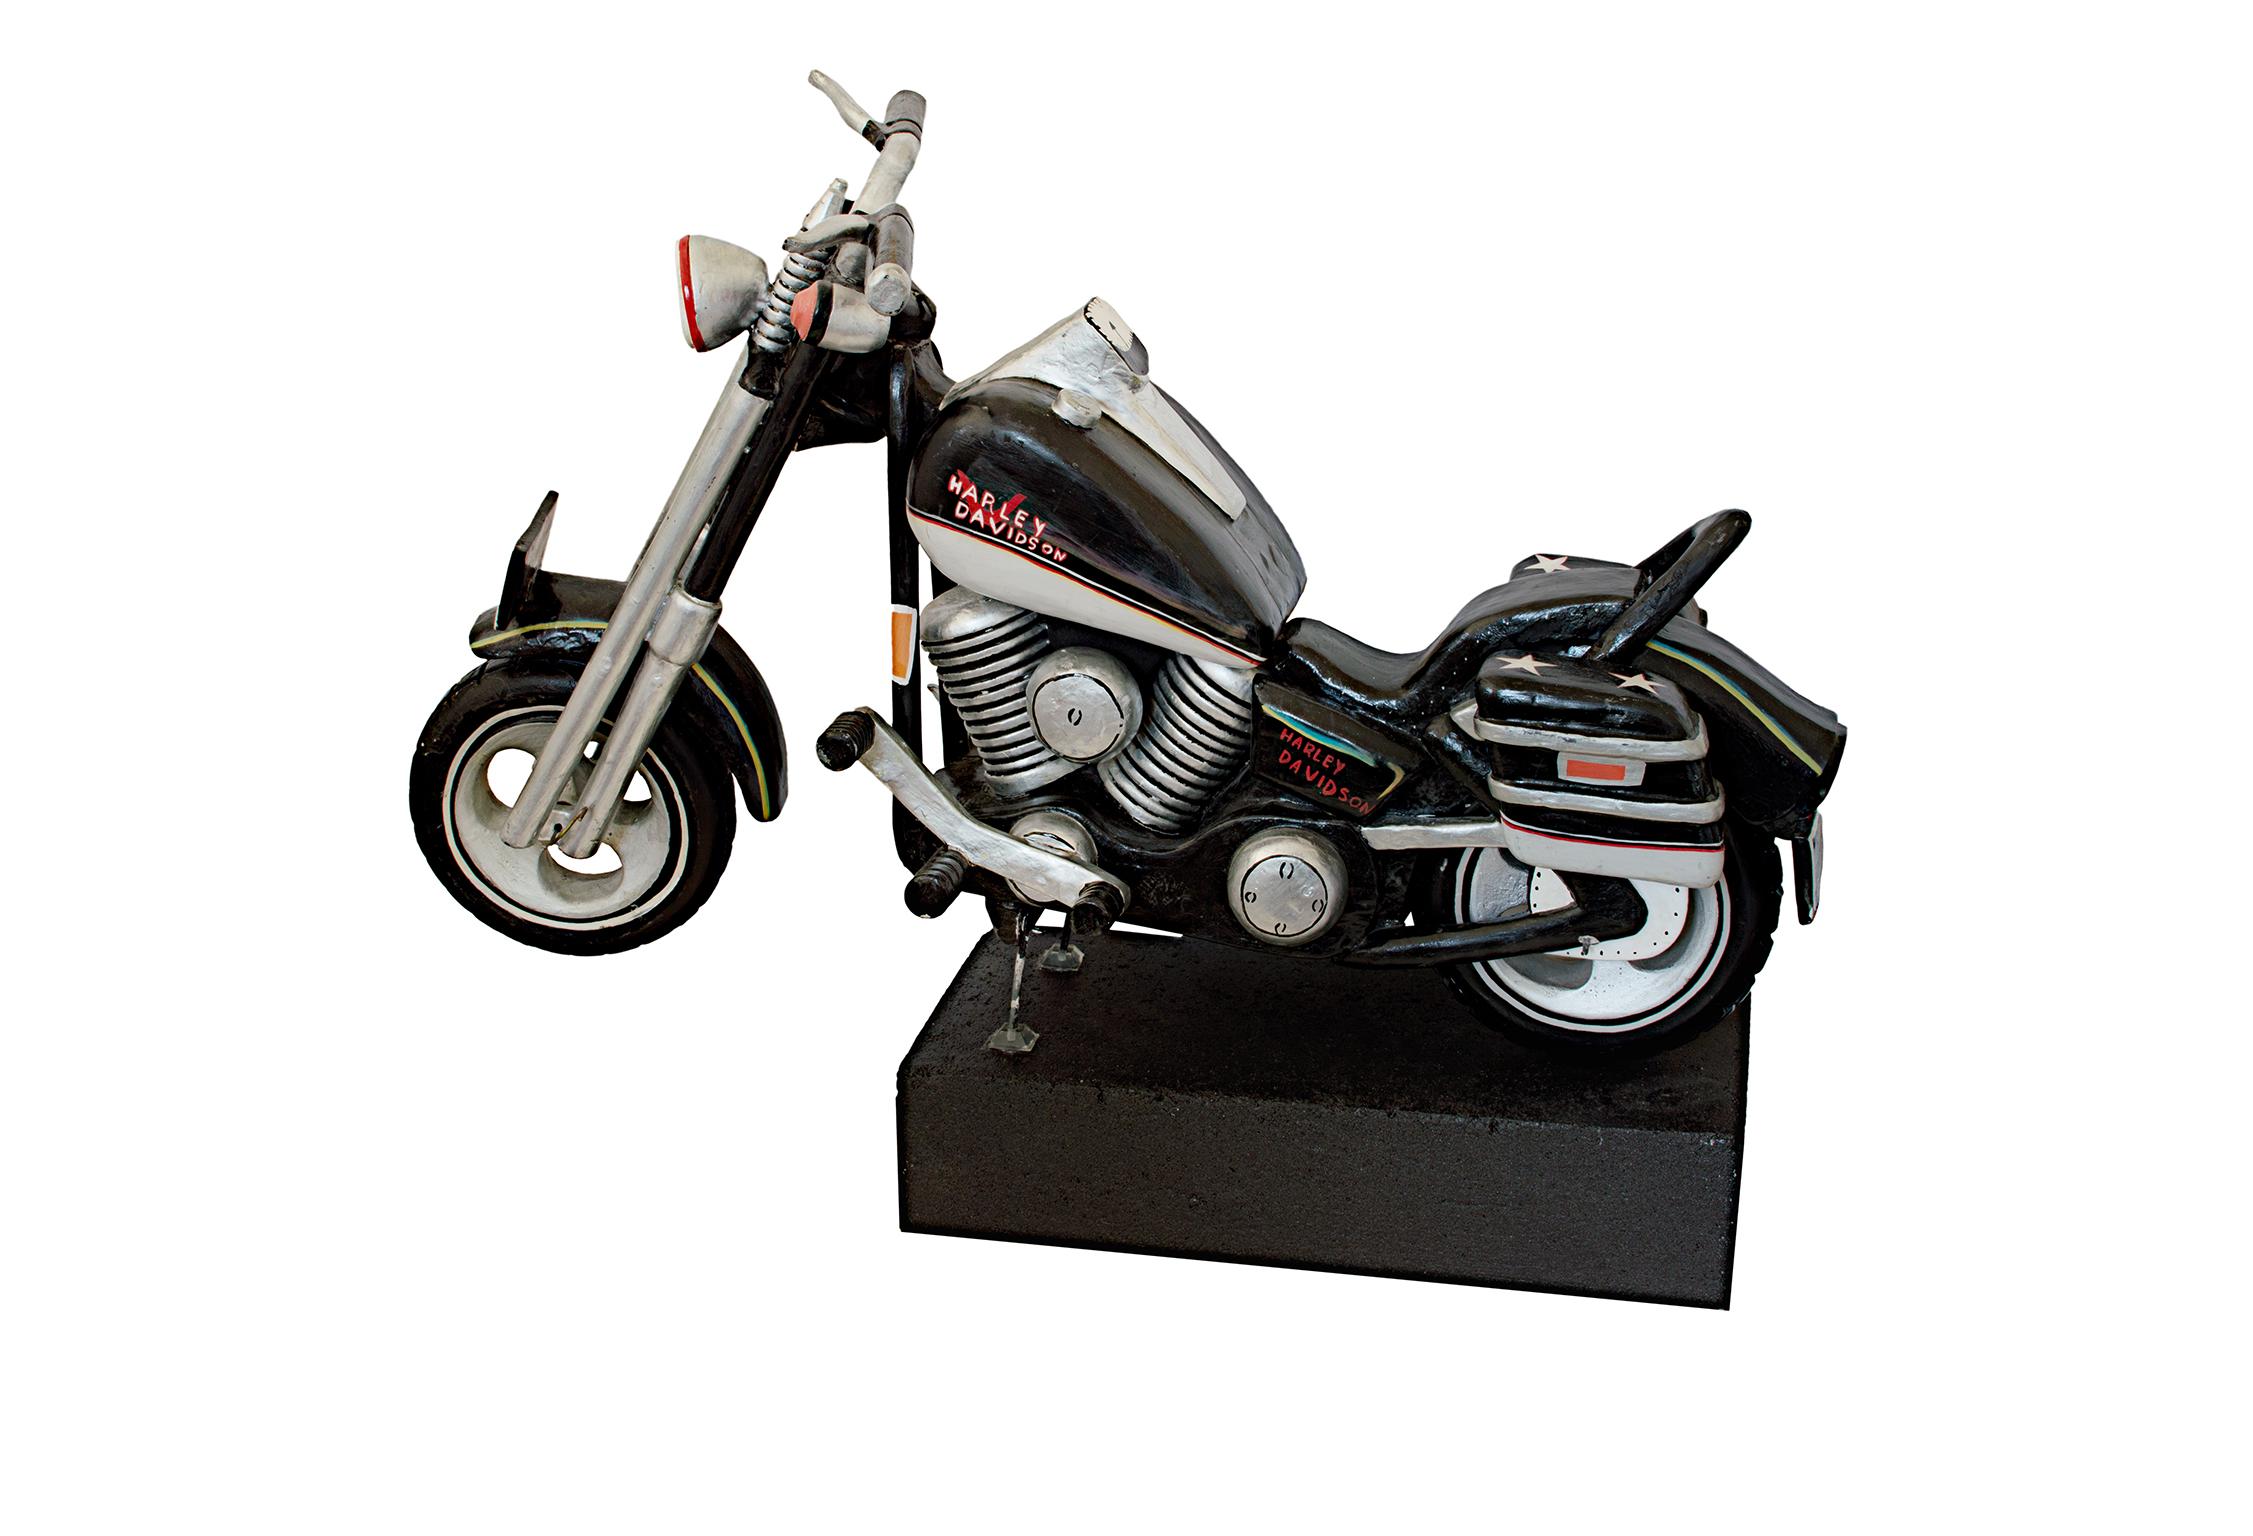 Cette sculpture est une moto Harley Davidson en bois sculpté. Il a été créé par un artiste folklorique inconnu et a été fabriqué au 20e siècle. 
